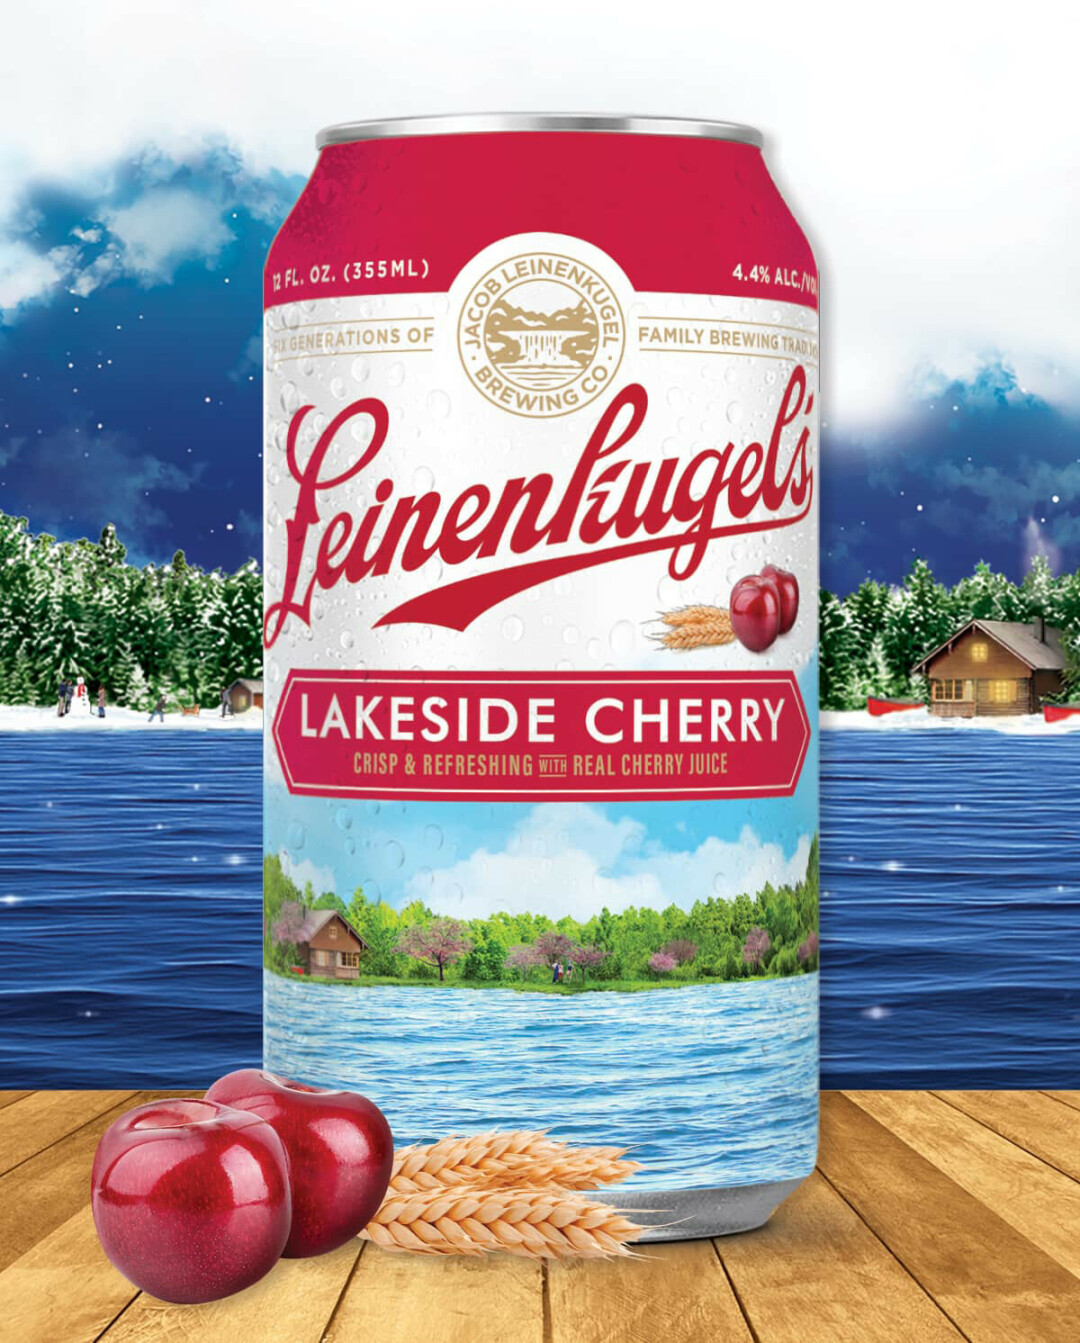 Lakeside Cherry. (Photos via Facebook)